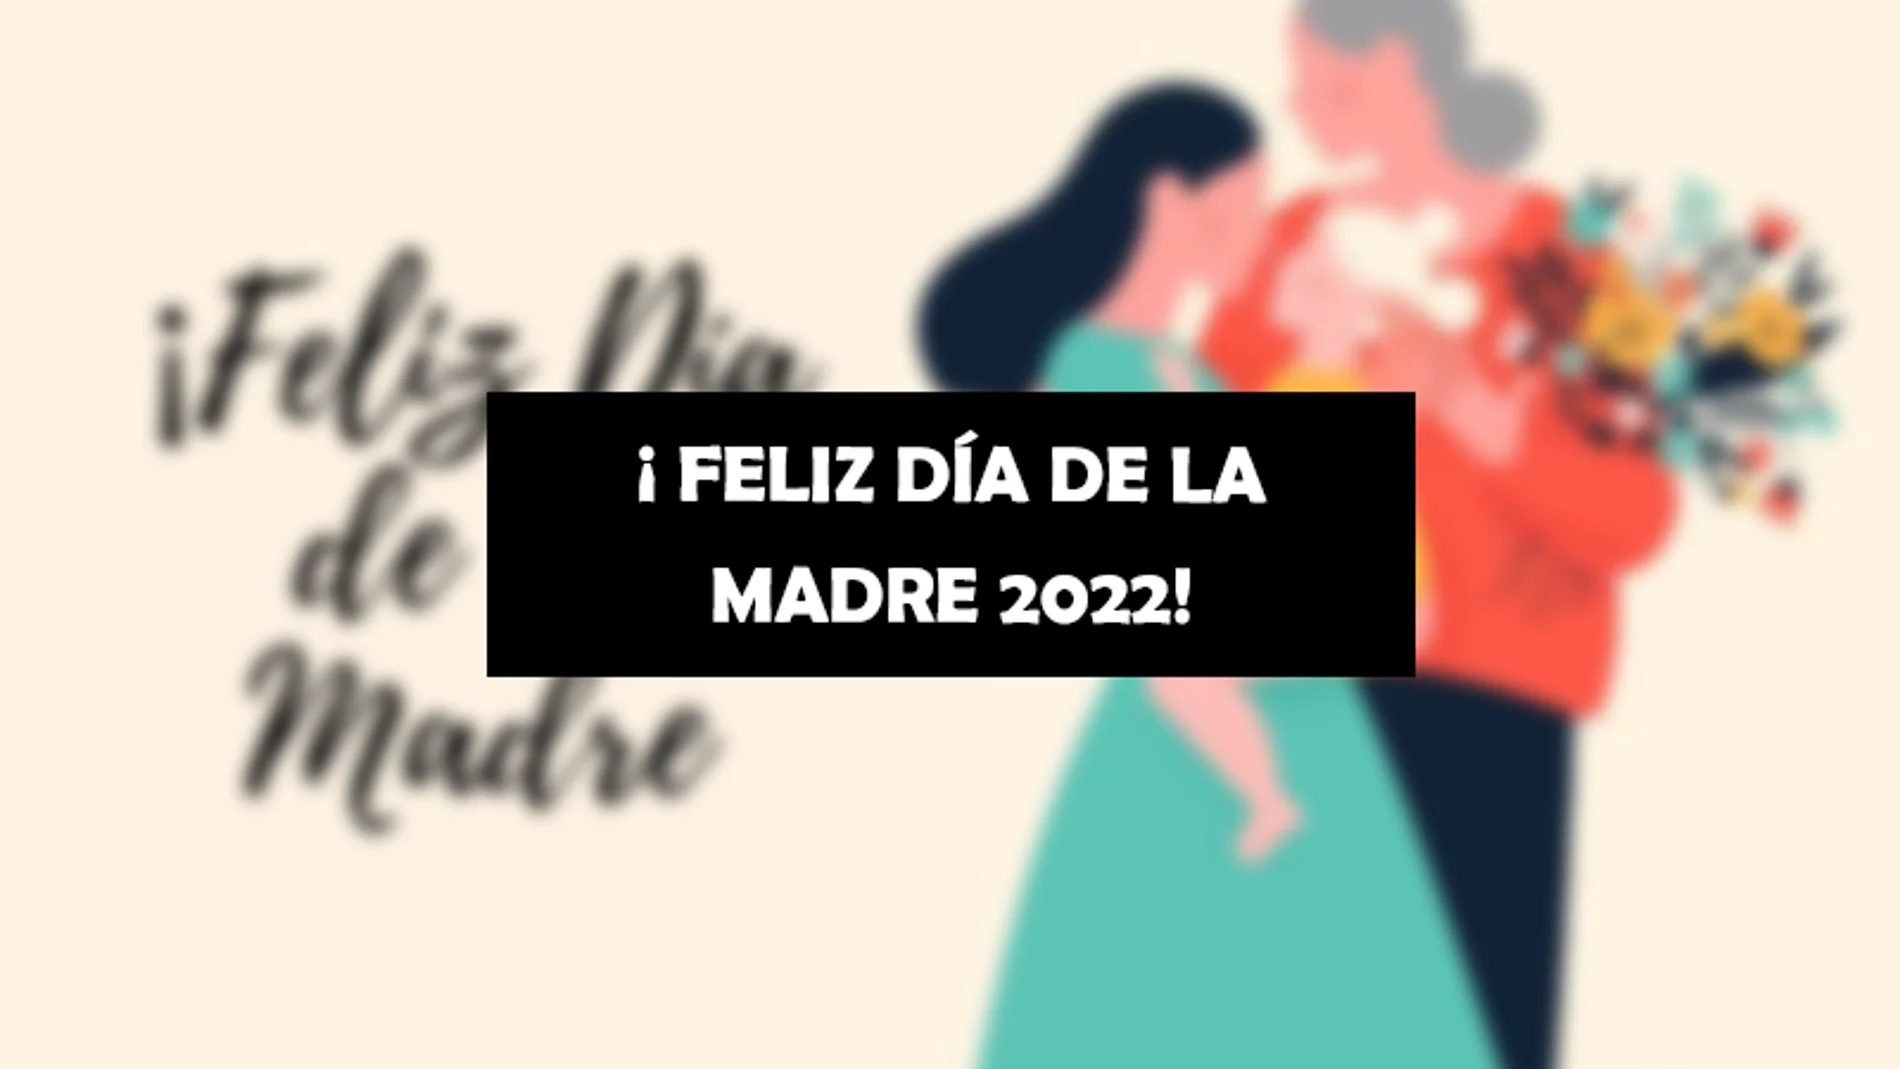 Los memes y gifs más originales del Día de la Madre 2022